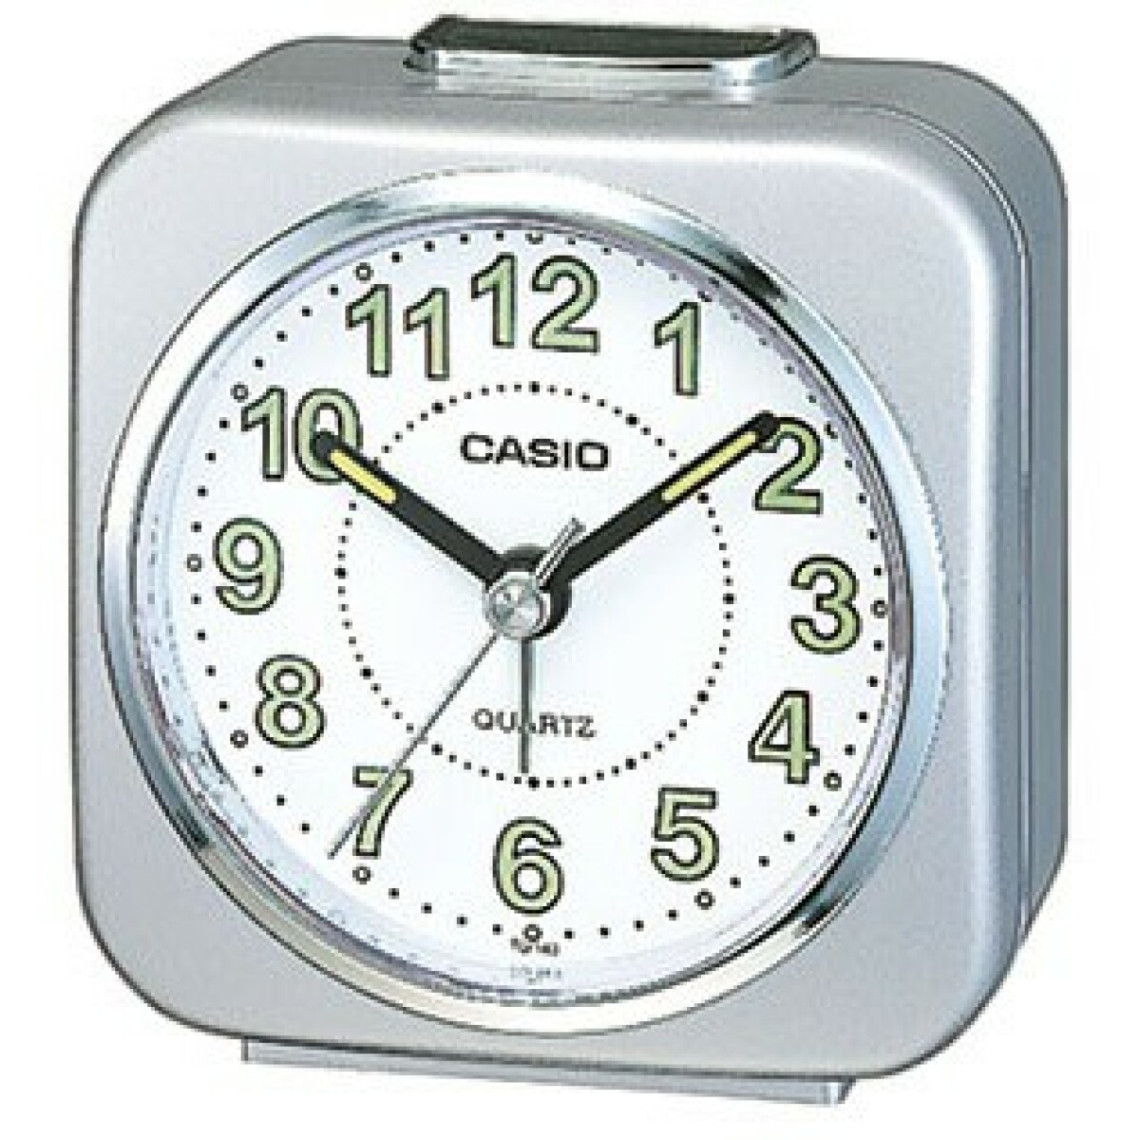 Réveil Casio TQ-143S-8EF - Réveil Argentée Alarme Casio LES ESSENTIELS HOMME